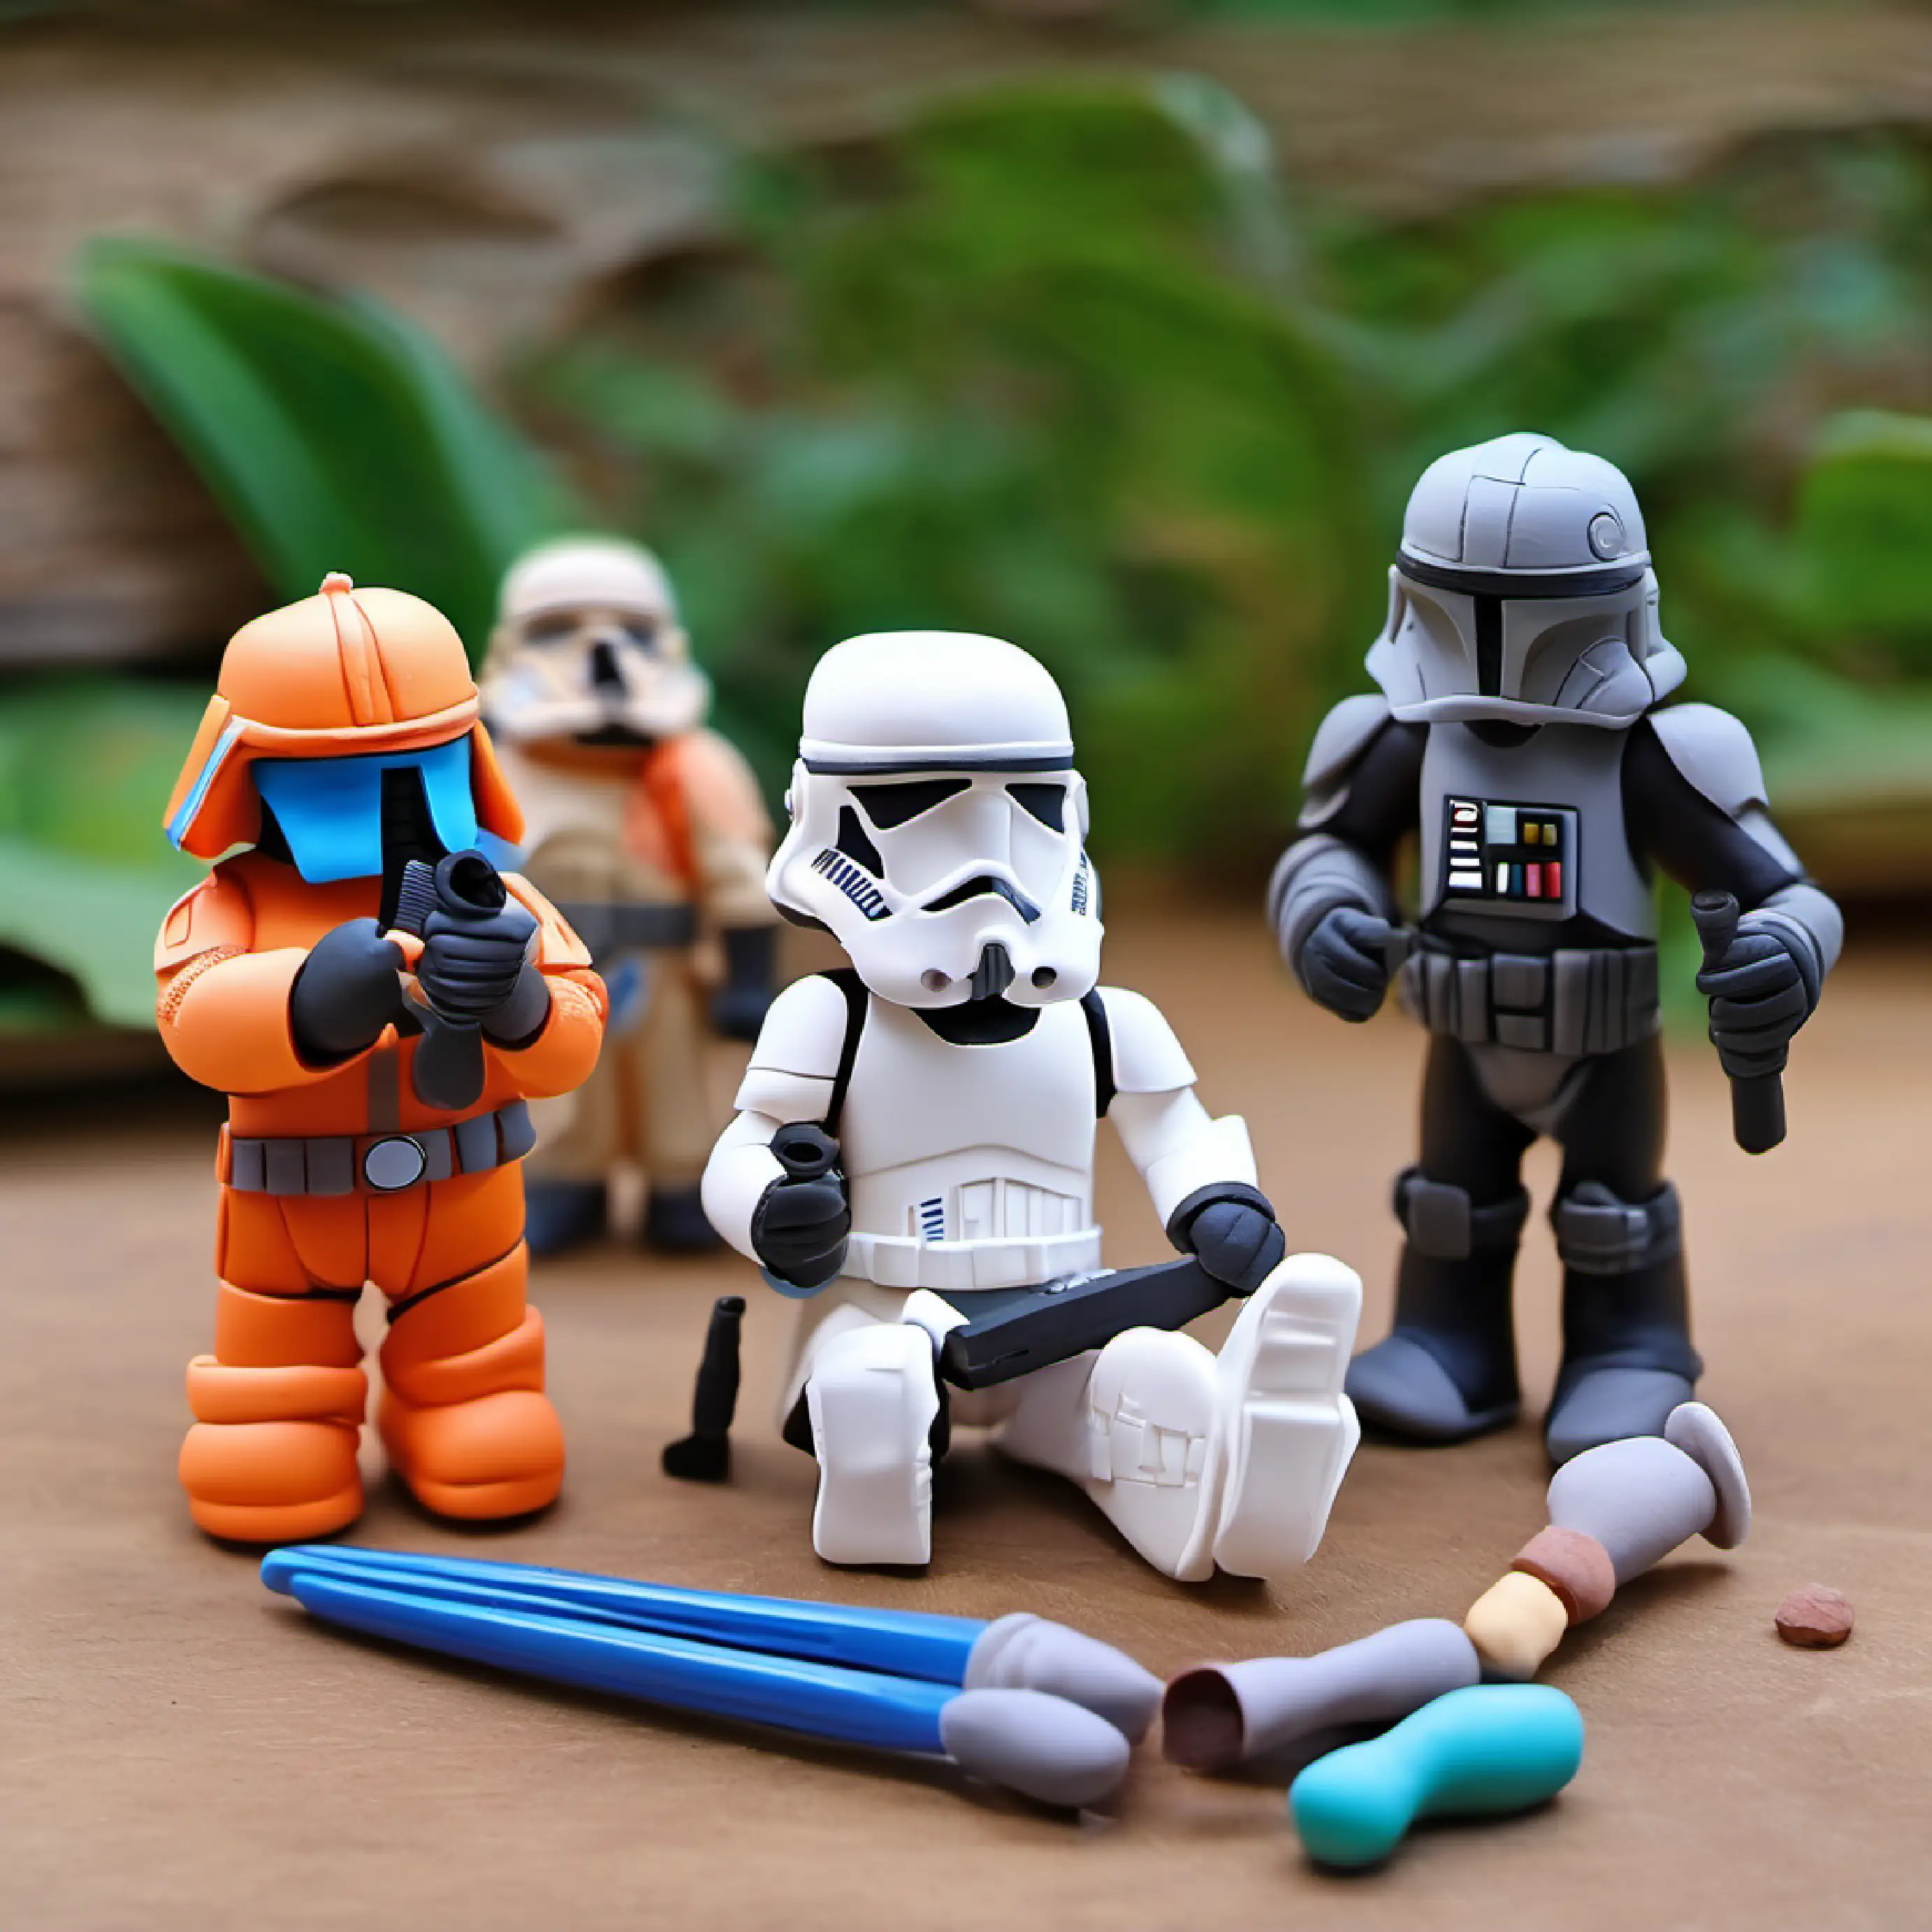 Assembling Star Wars figures